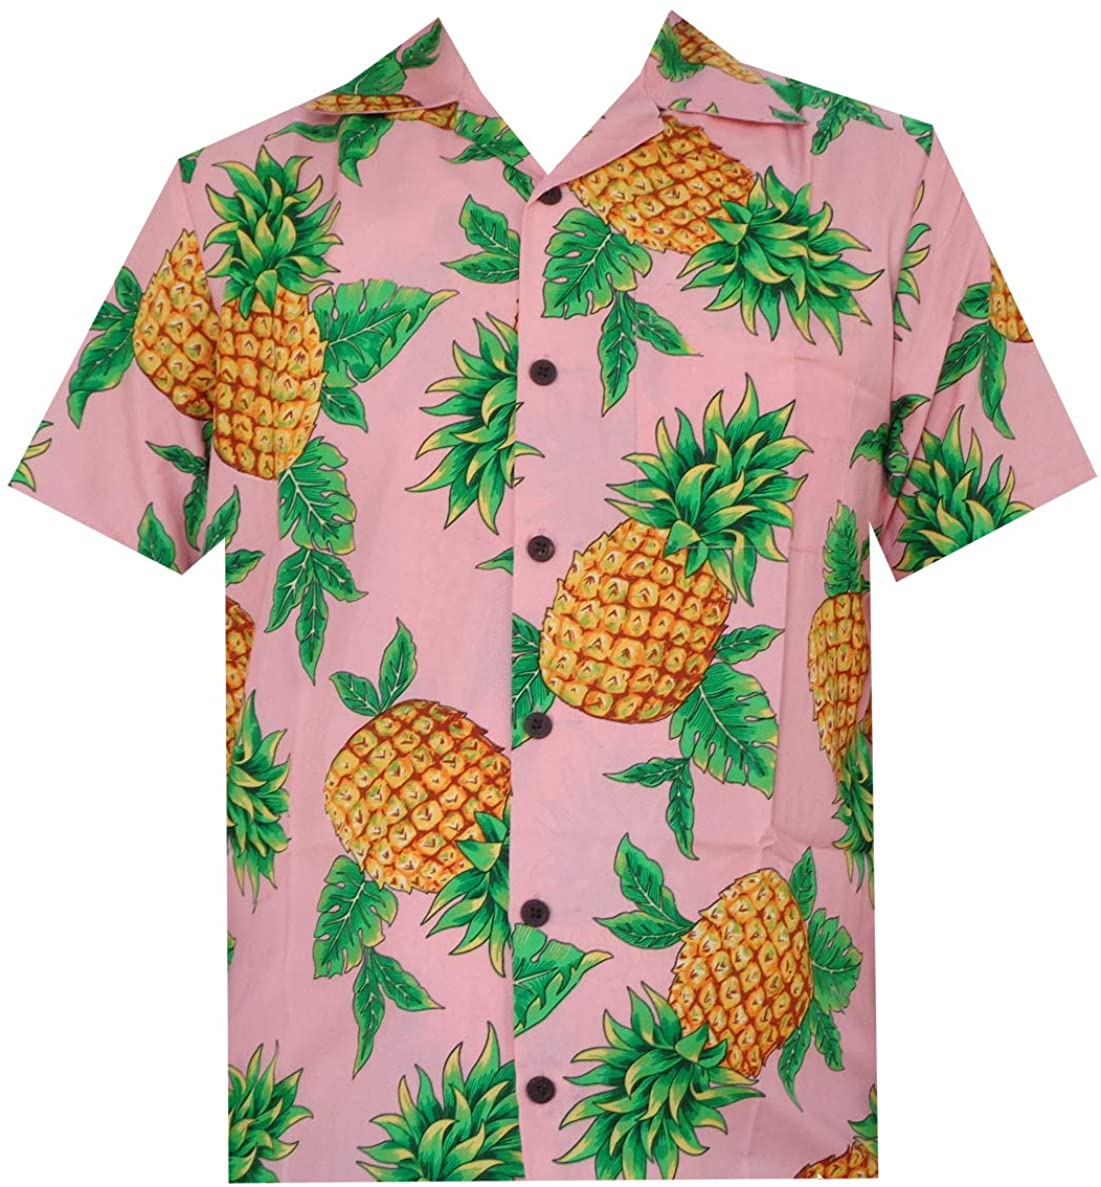 Alvish Hawaiian Shirts Mens Beach Aloha Casual Holiday Short Sleeve Camp Party